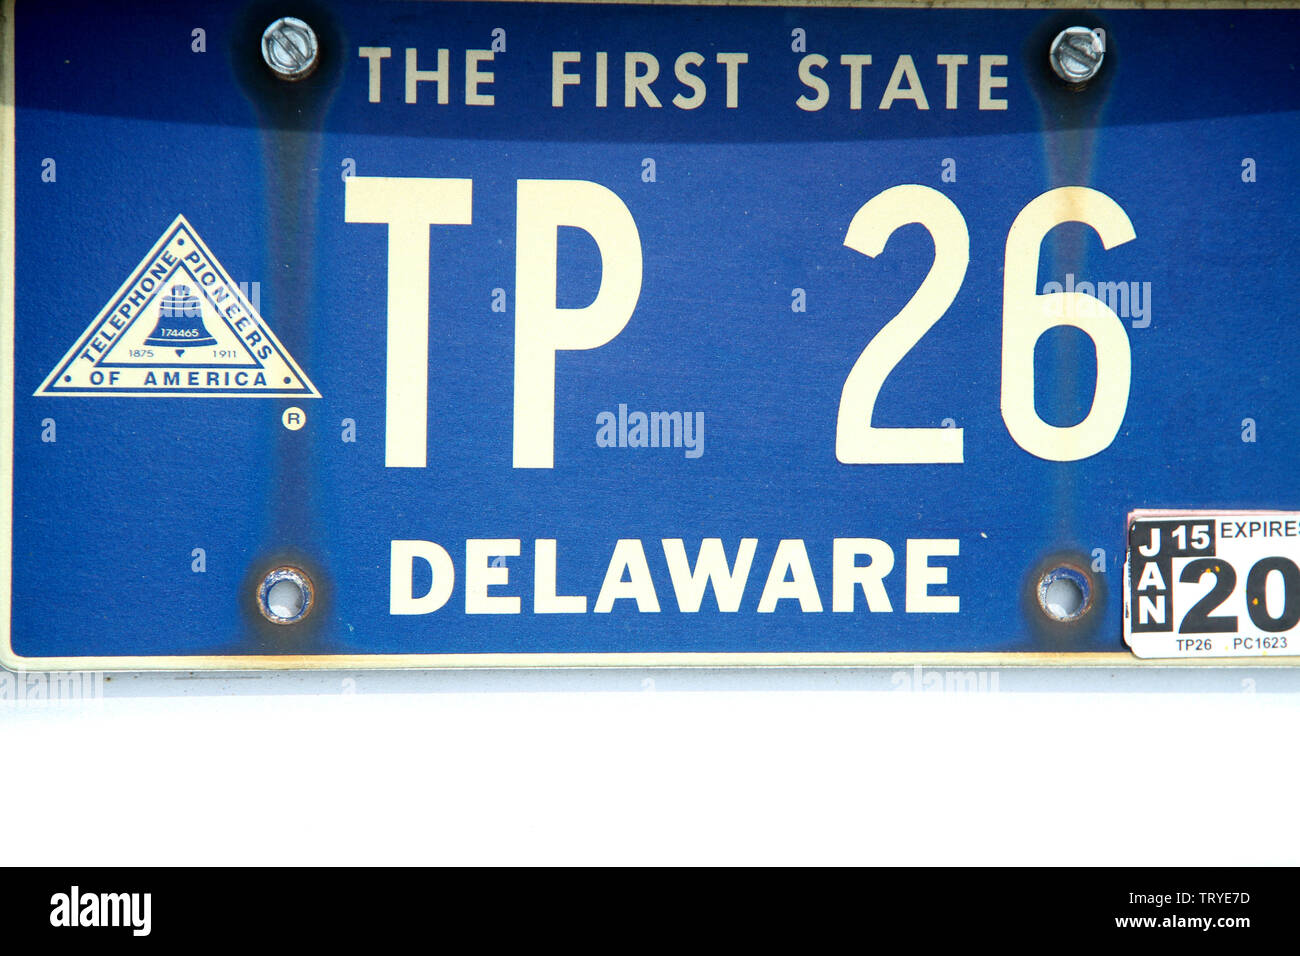 Delaware license plate, USA Stock Photo